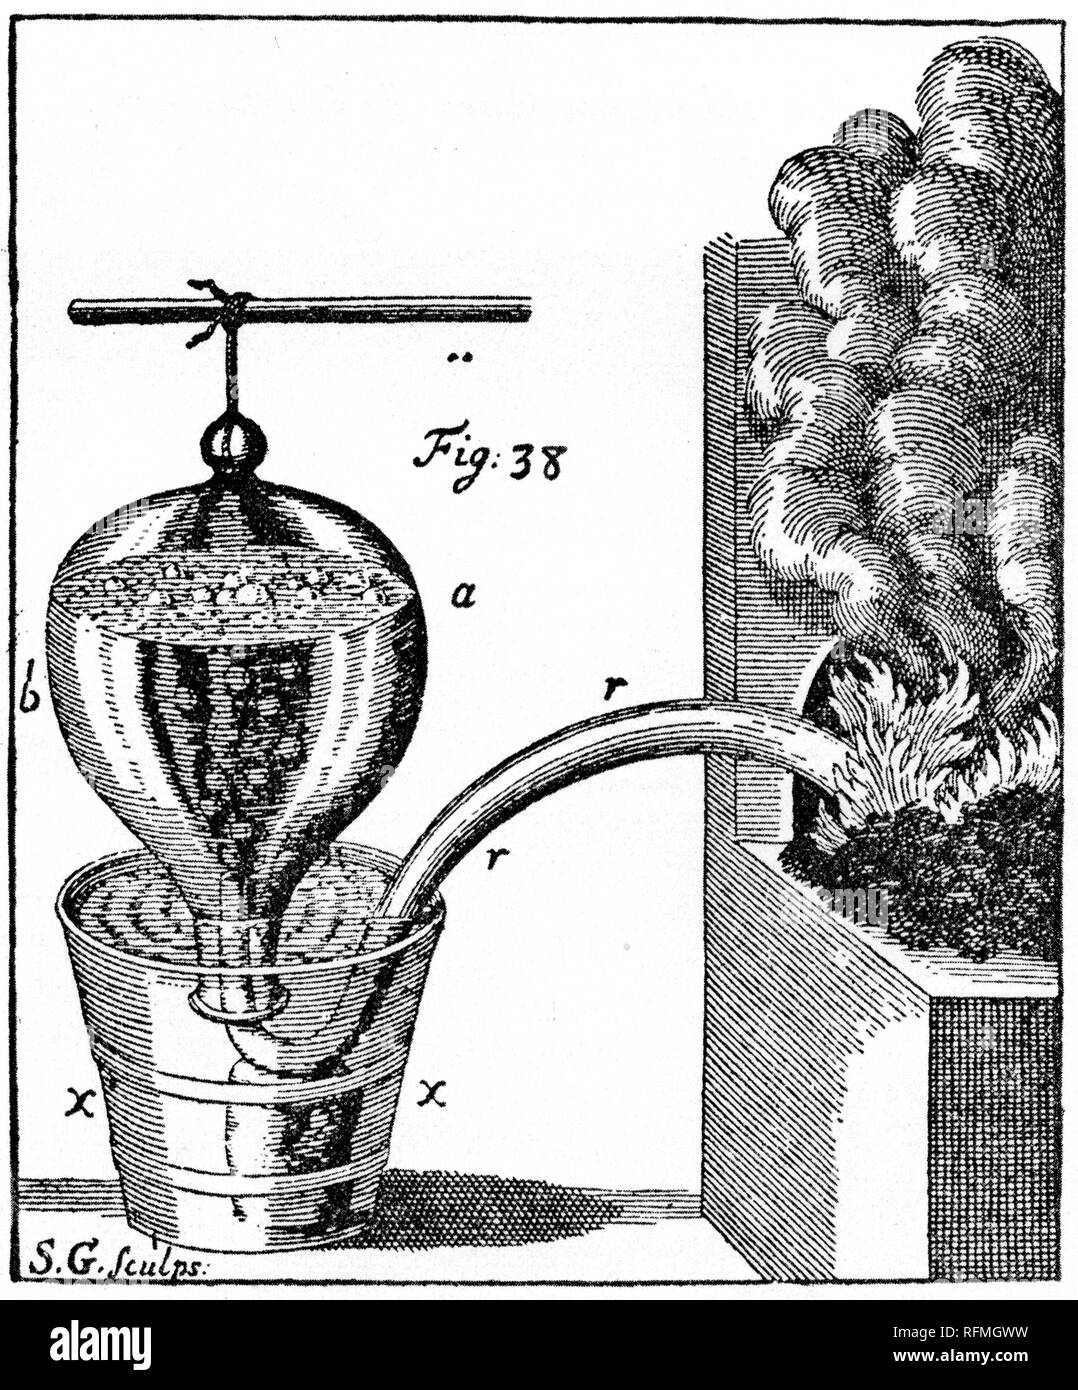 "Come Stephen Hales ha raccolto l'"aria" data via quando le sostanze sono state riscaldate". Trogolo pneumatico di Stephen Hales, c1727. Stephen Hales (1677-1761) è stato un clergista inglese che ha contribuito in modo significativo ad una serie di campi scientifici, tra cui botanica, chimica pneumatica e fisiologia. Foto Stock